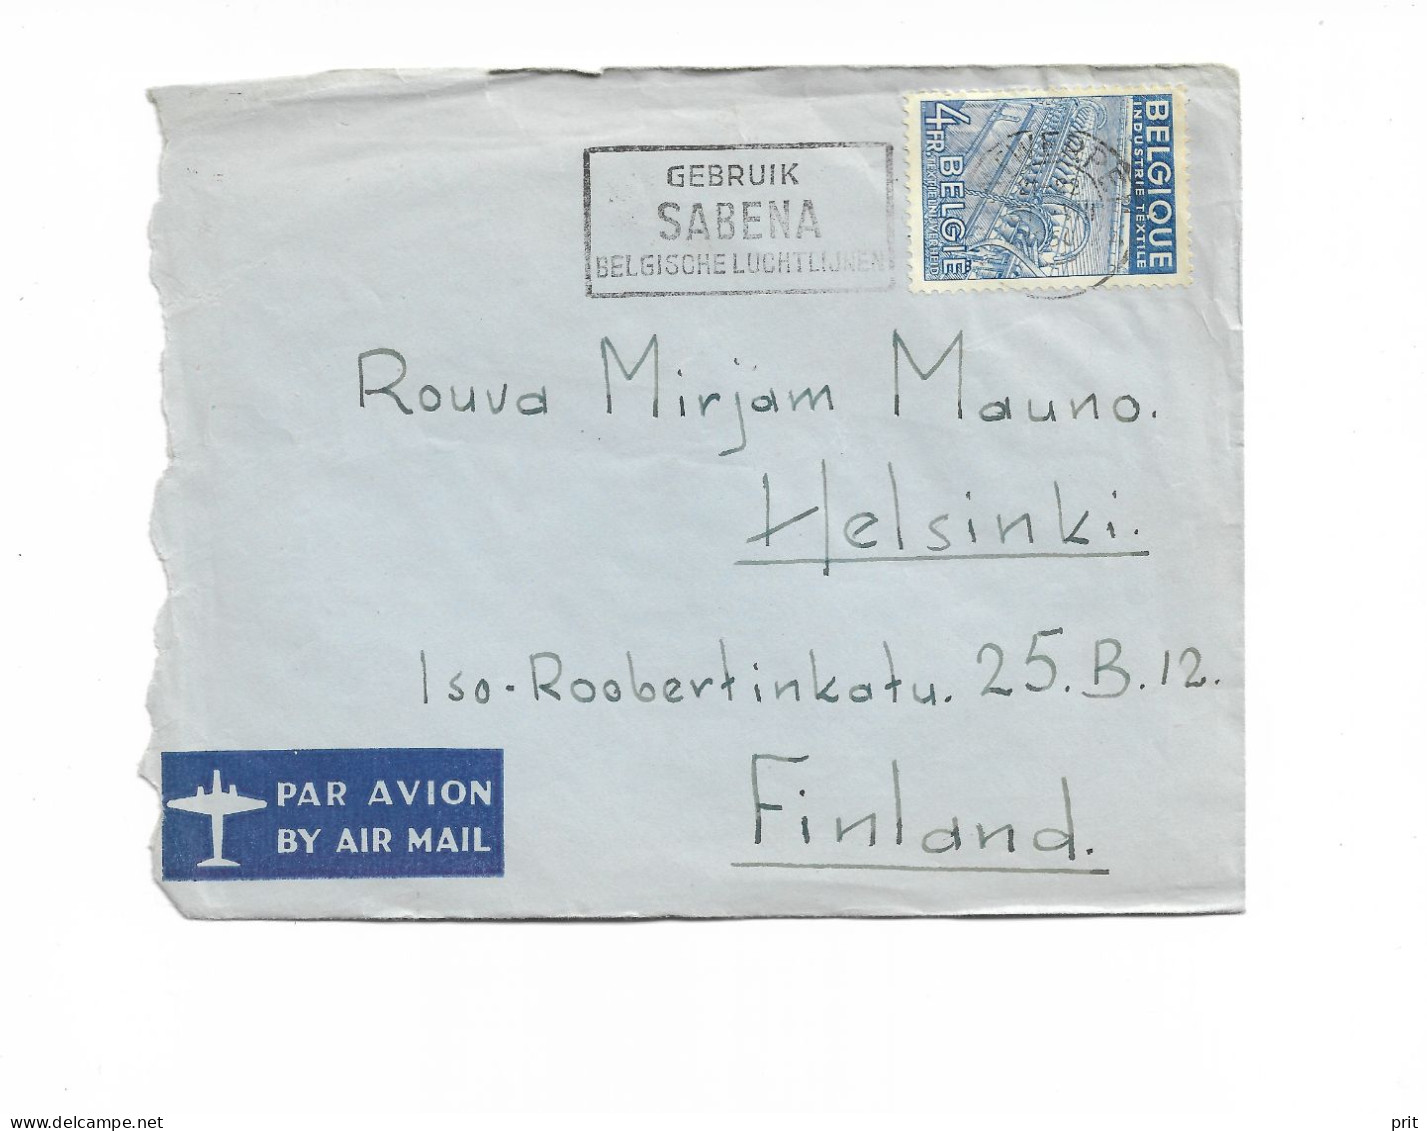 Antwerpen Belgium Airmail Cover To Helsinki Finland 1950 "Gebruik Sabena Belgische Luchtlijnen" Slogan Cancel - Lettres & Documents